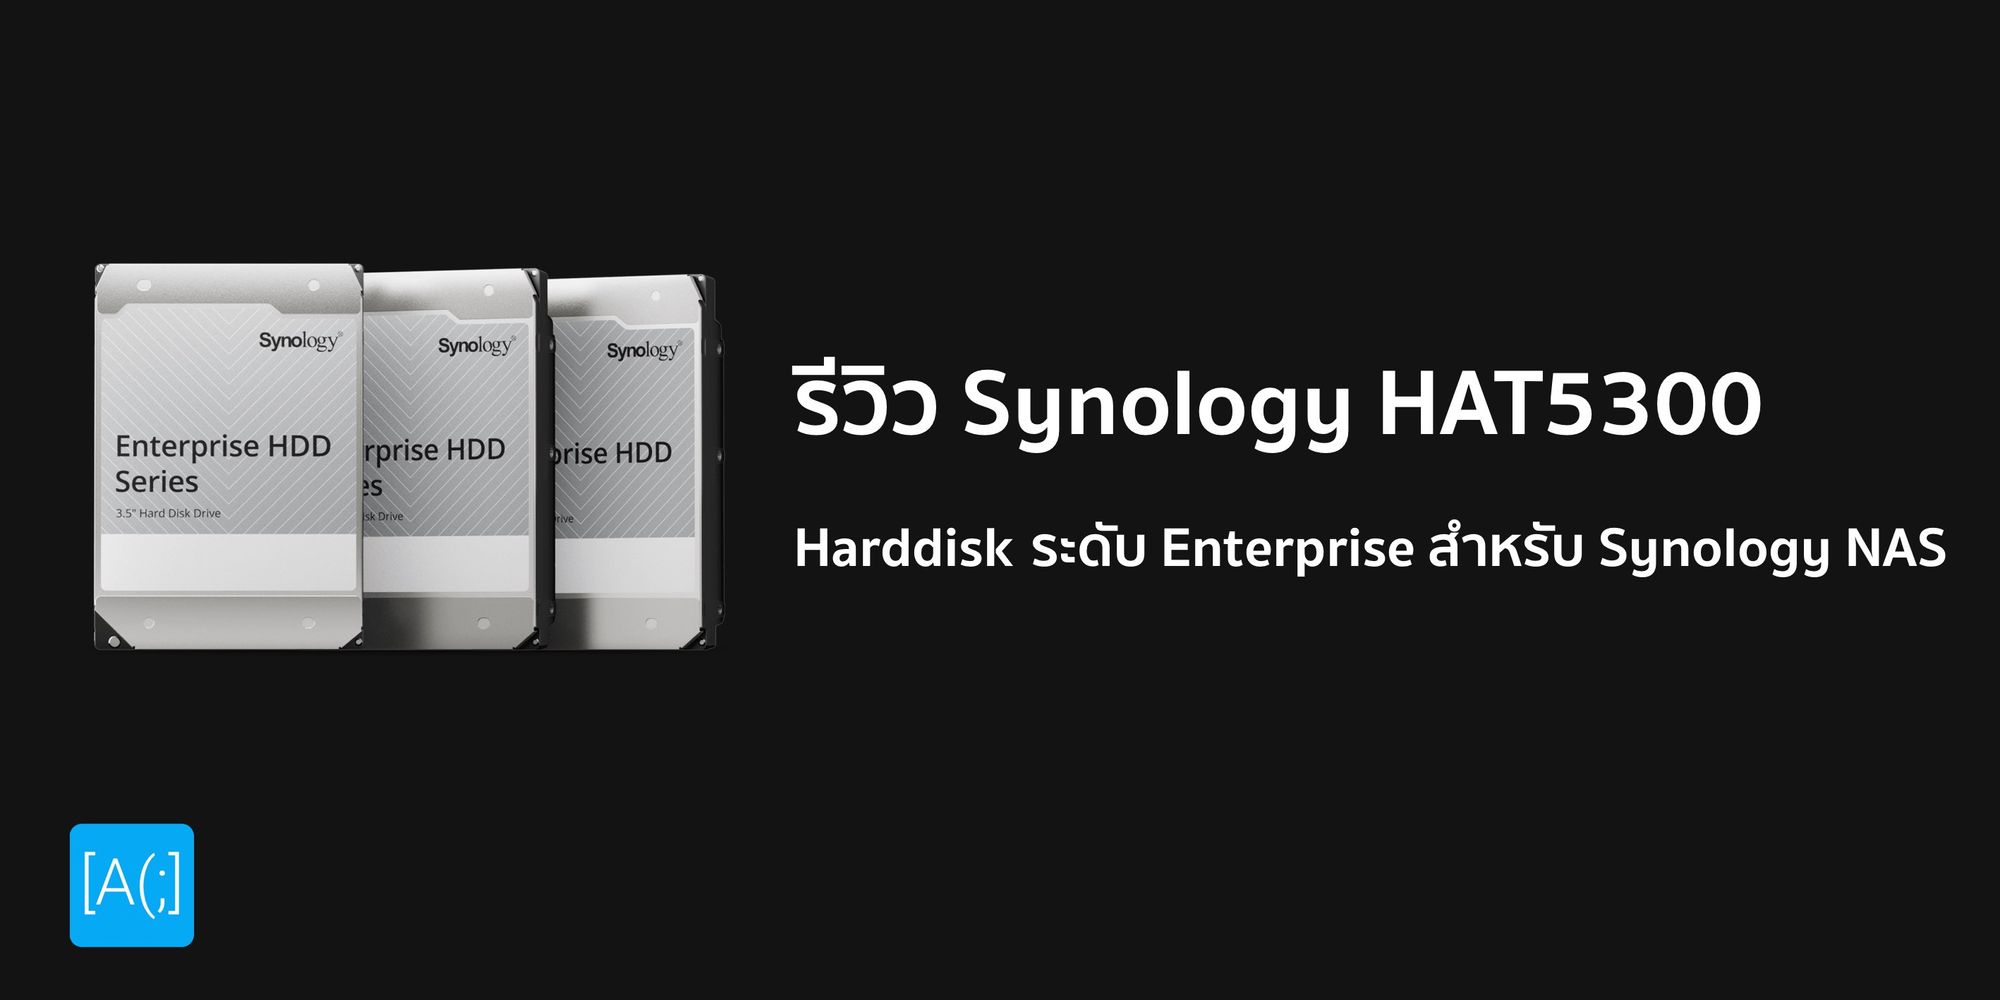 รีวิว Synology HAT5300 Harddisk ระดับ Enterprise สำหรับ Synology NAS ที่รัก